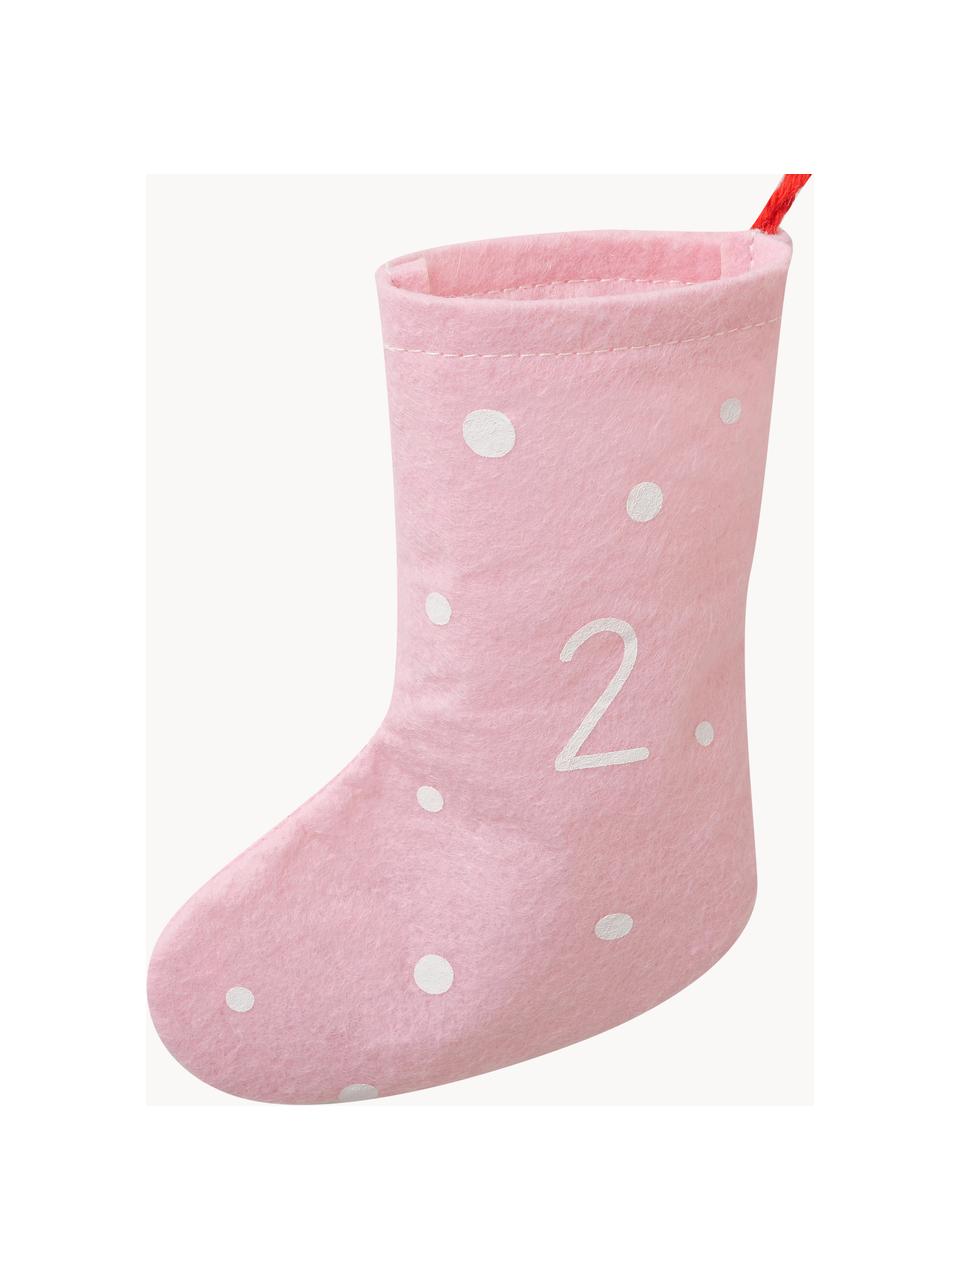 Calendario dell'avvento Socke, 200 cm, Feltro, Rosso, rosa, bianco, Lung. 200 cm